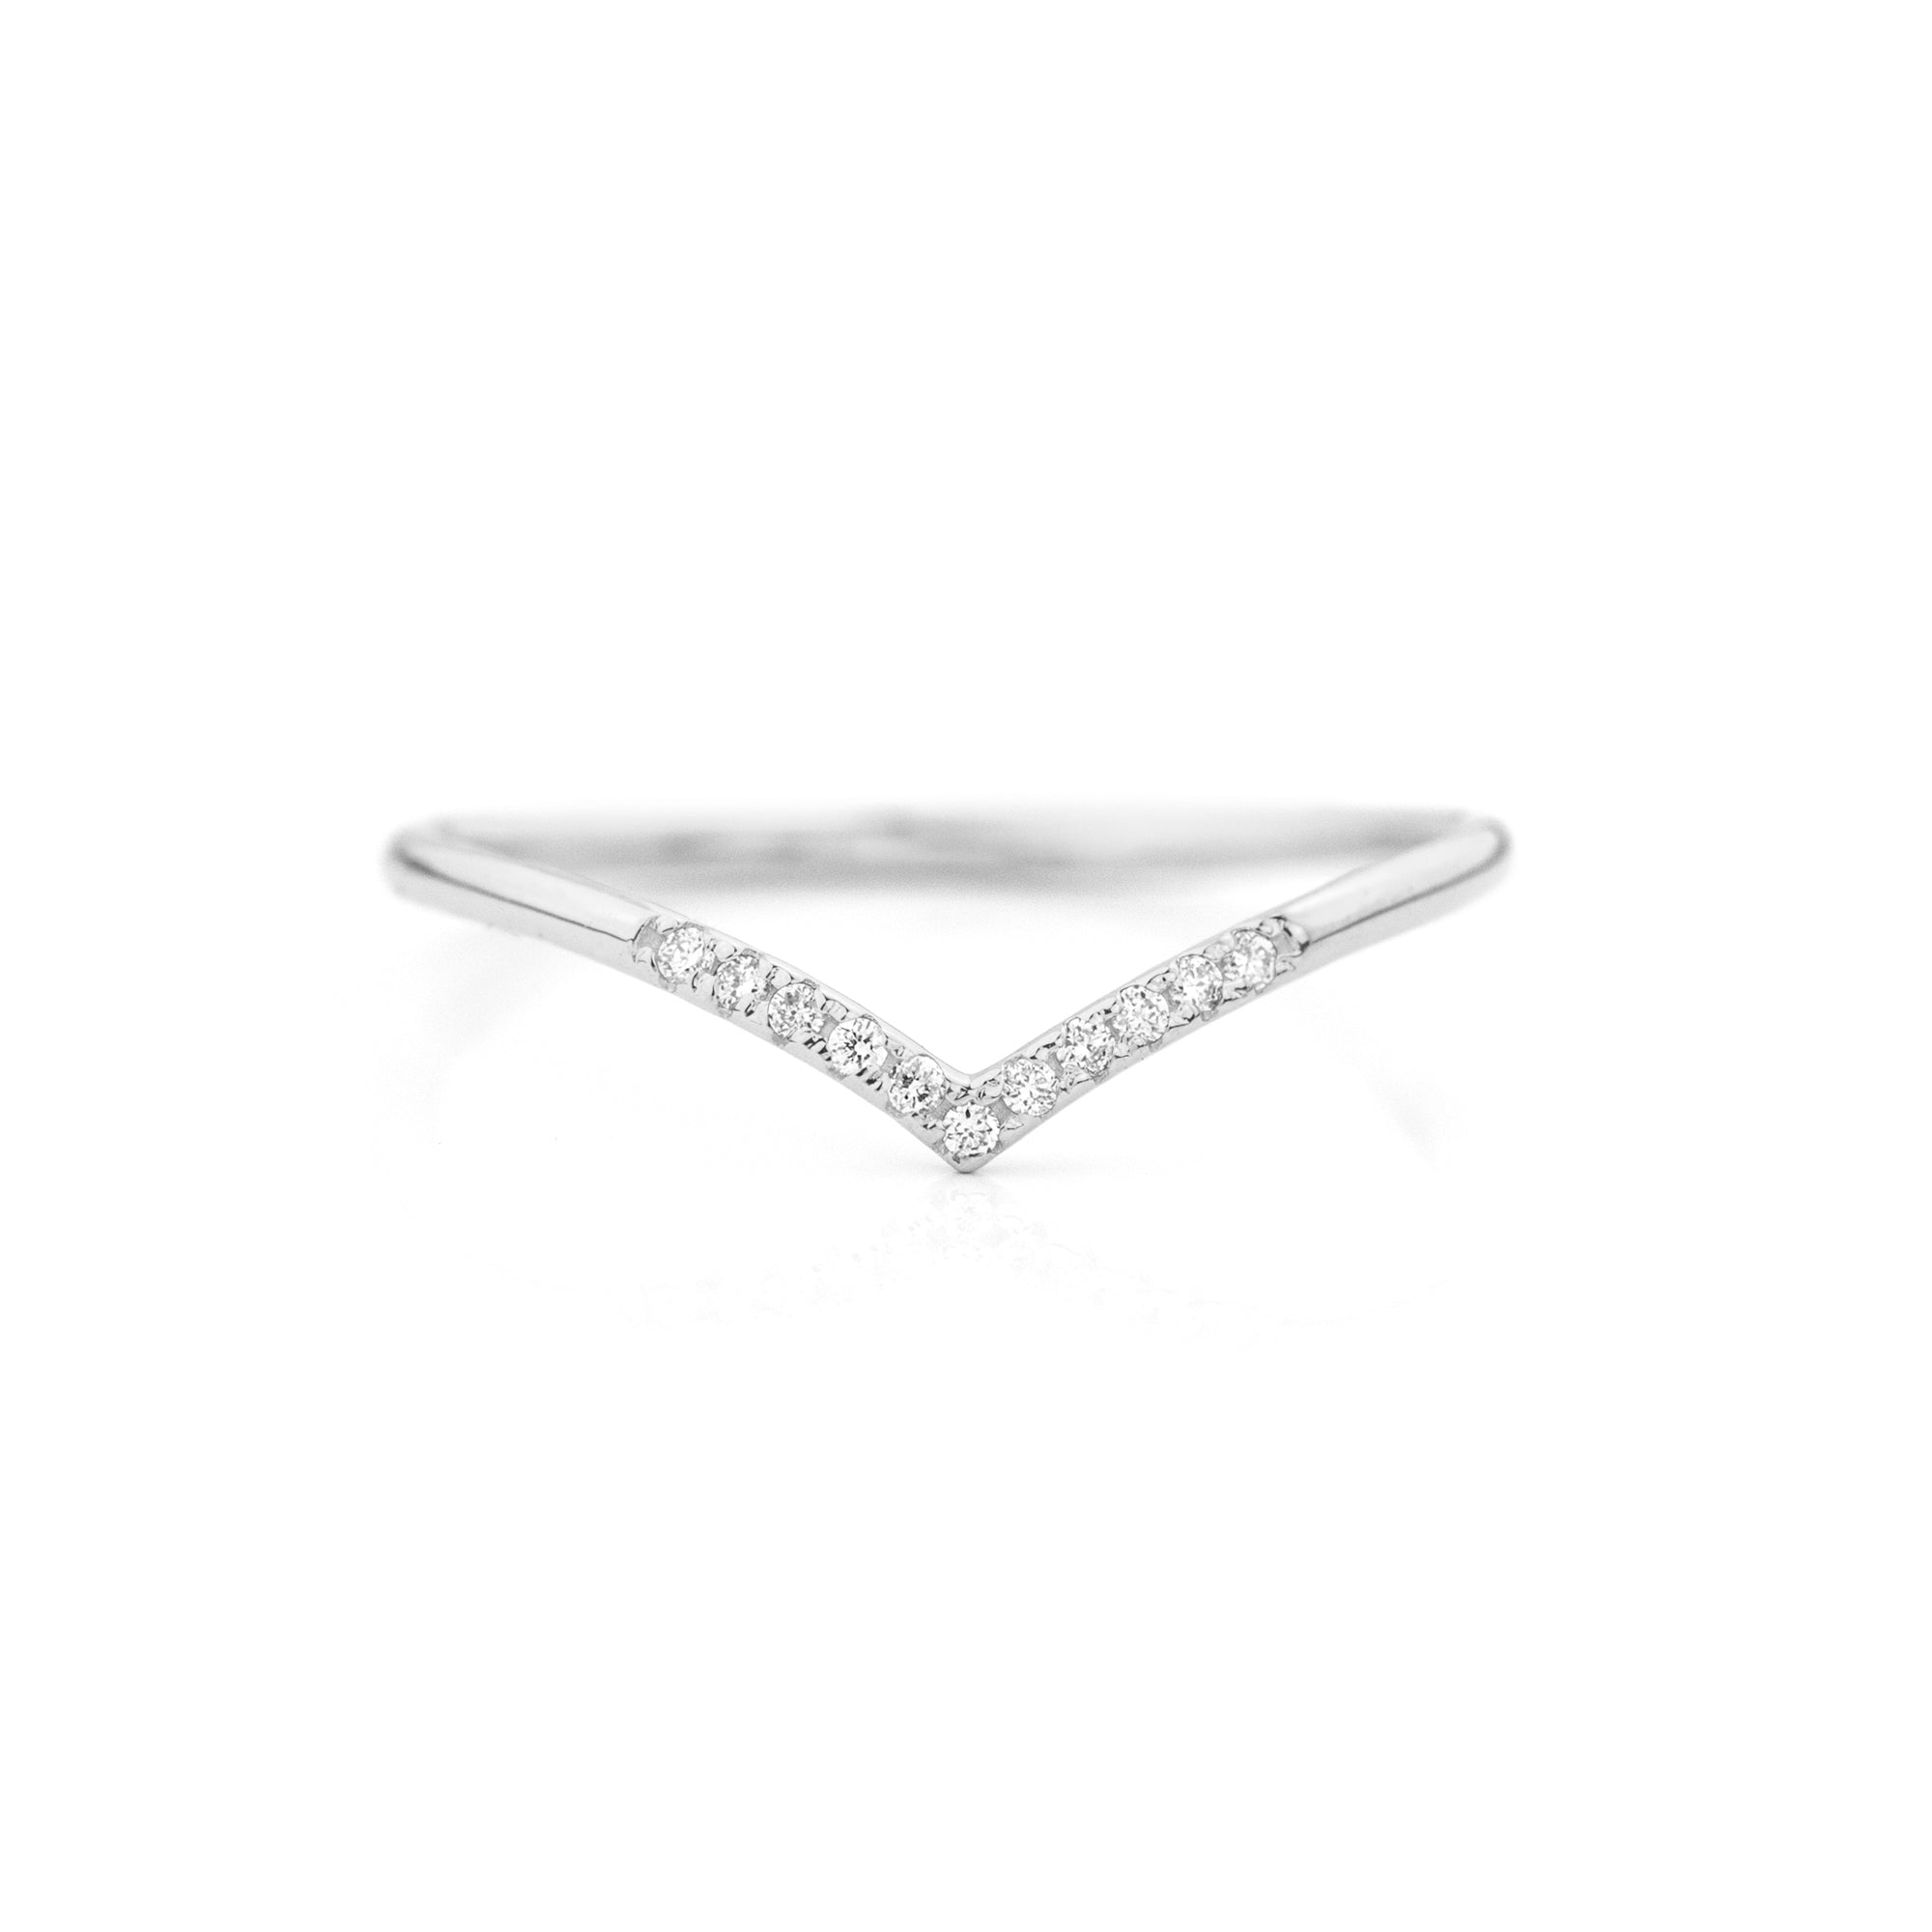 Jamie Park Jewelry - Diamond Chevron Ring